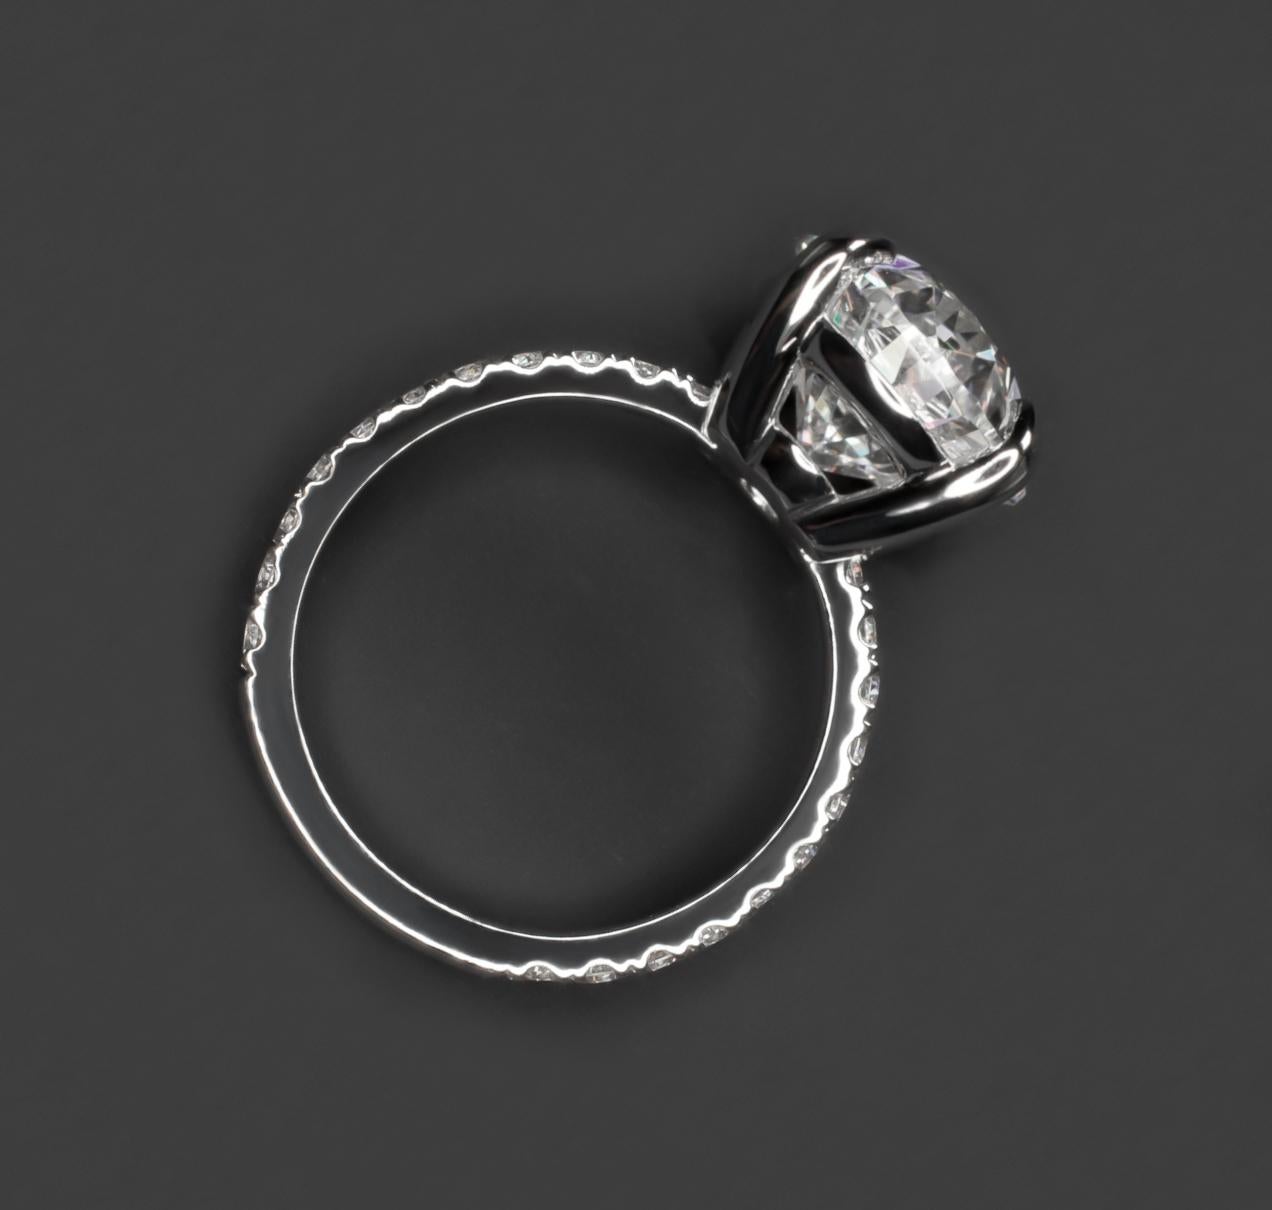 Un étonnant diamant d'investissement d'un poids exceptionnel de 5 carats 
VS1 Clarté 100% propre à l'œil.
La pierre principale est un diamant certifié GIA, dont le rapport gemmologique indique une couleur E et une pureté VS1.
